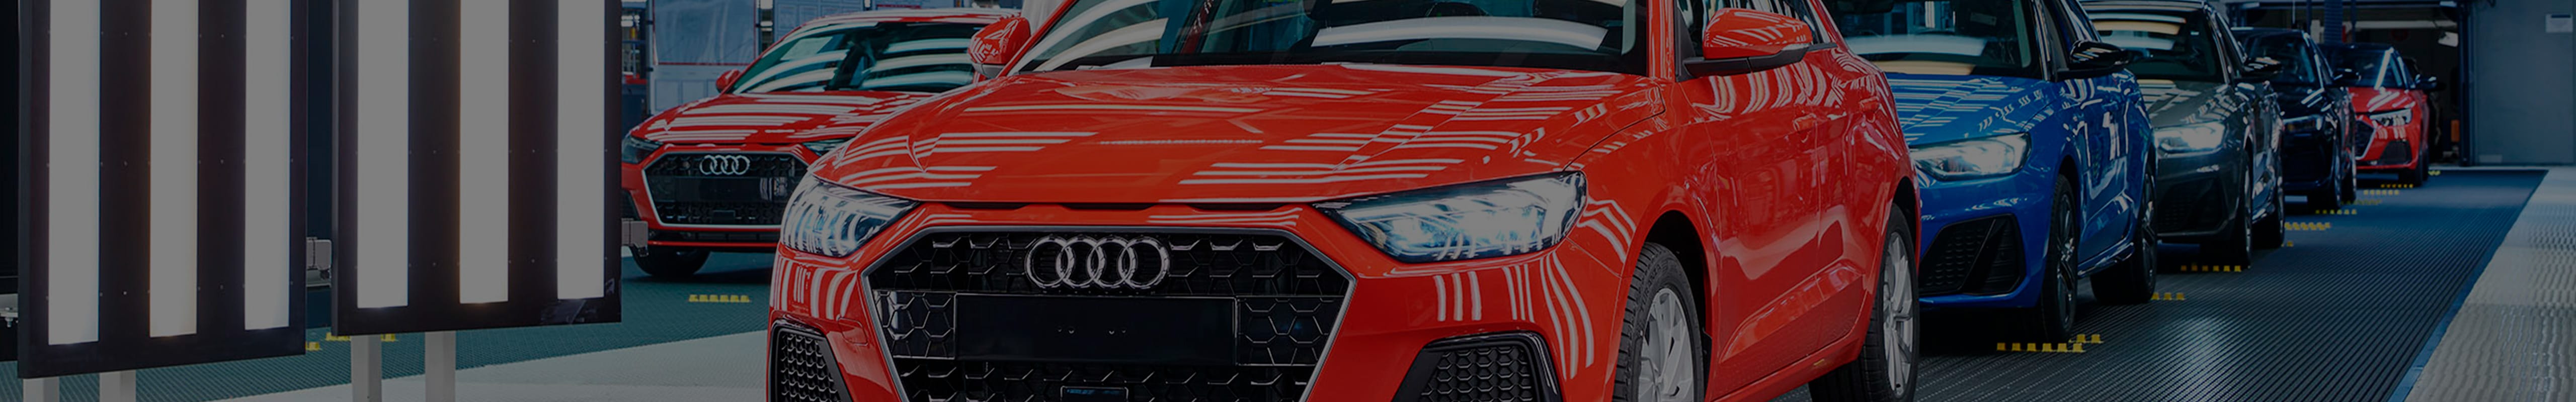 Lancement de la production de l’Audi A1 dans l’usine SEAT de Martorell